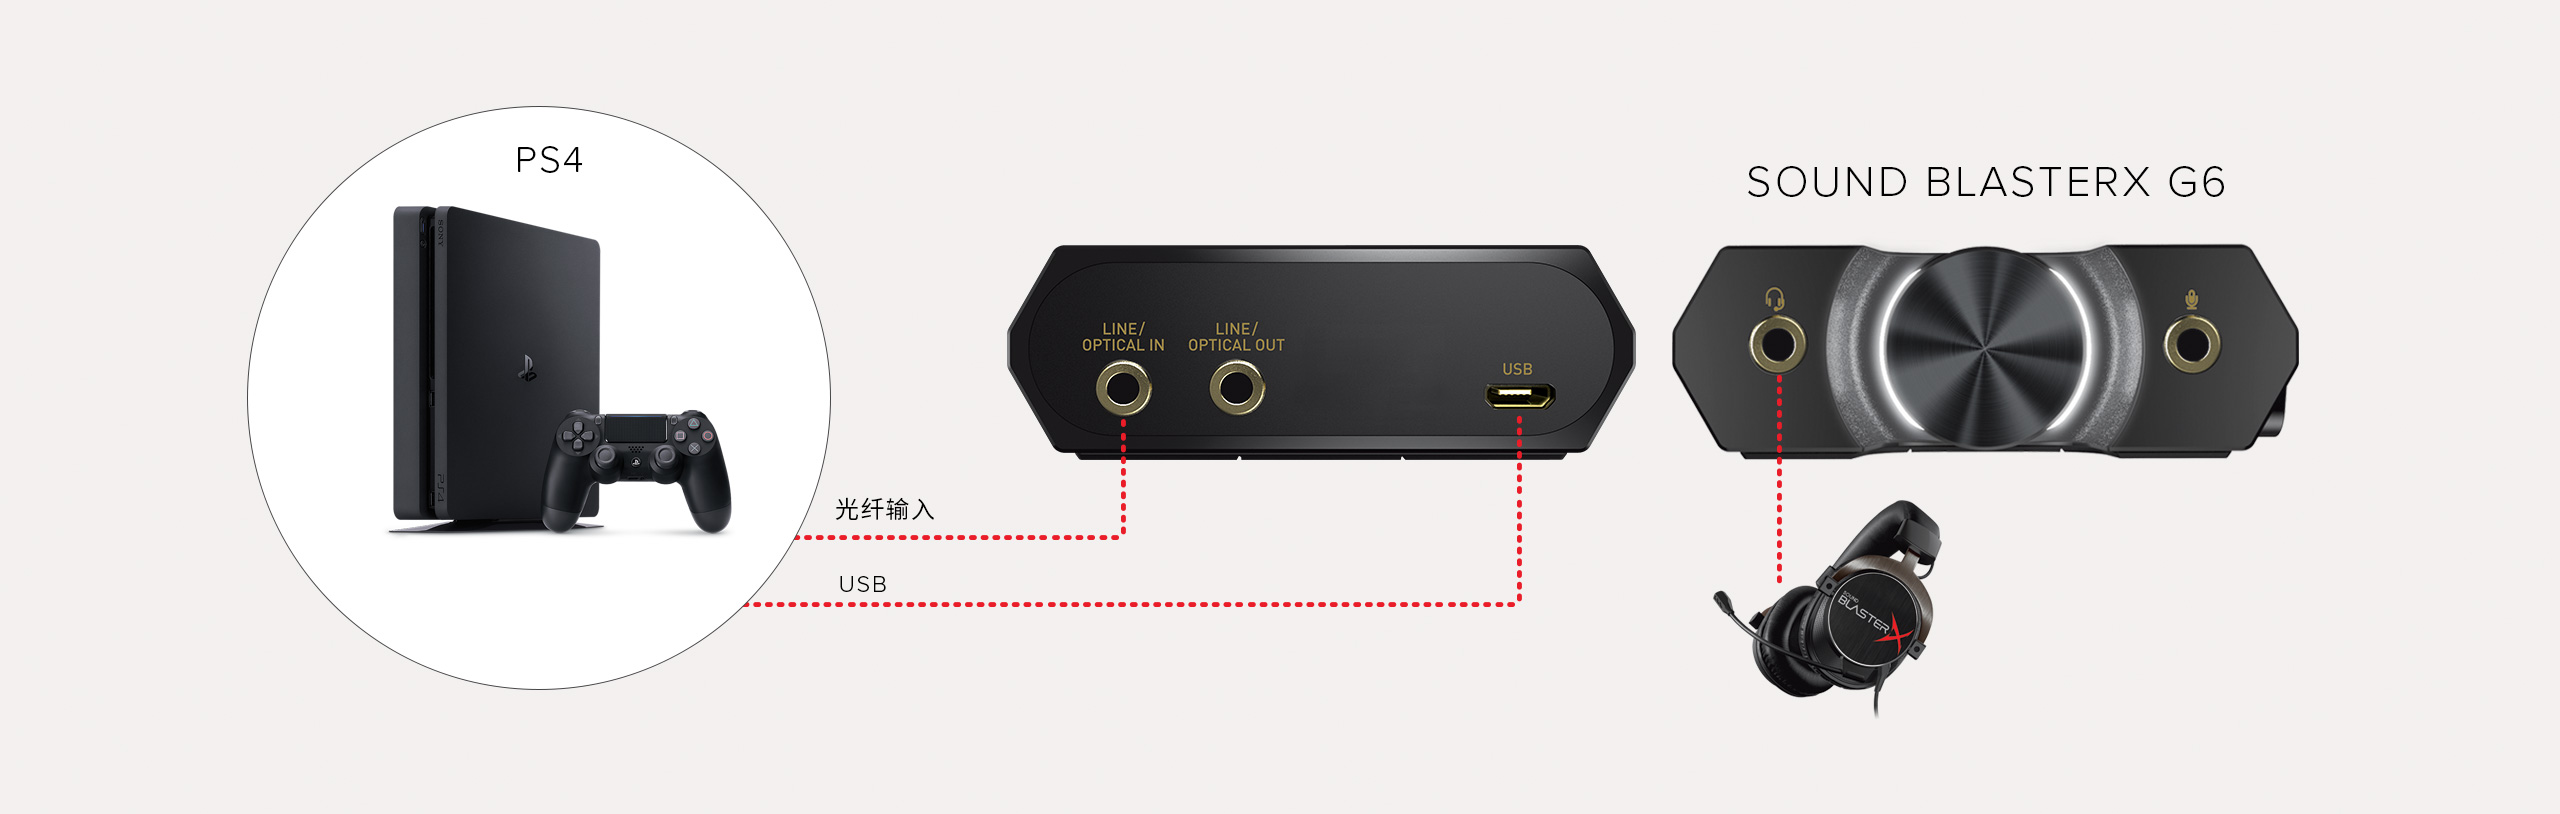 Sound Blasterx G6 Sound Blaster 创新科技 中国